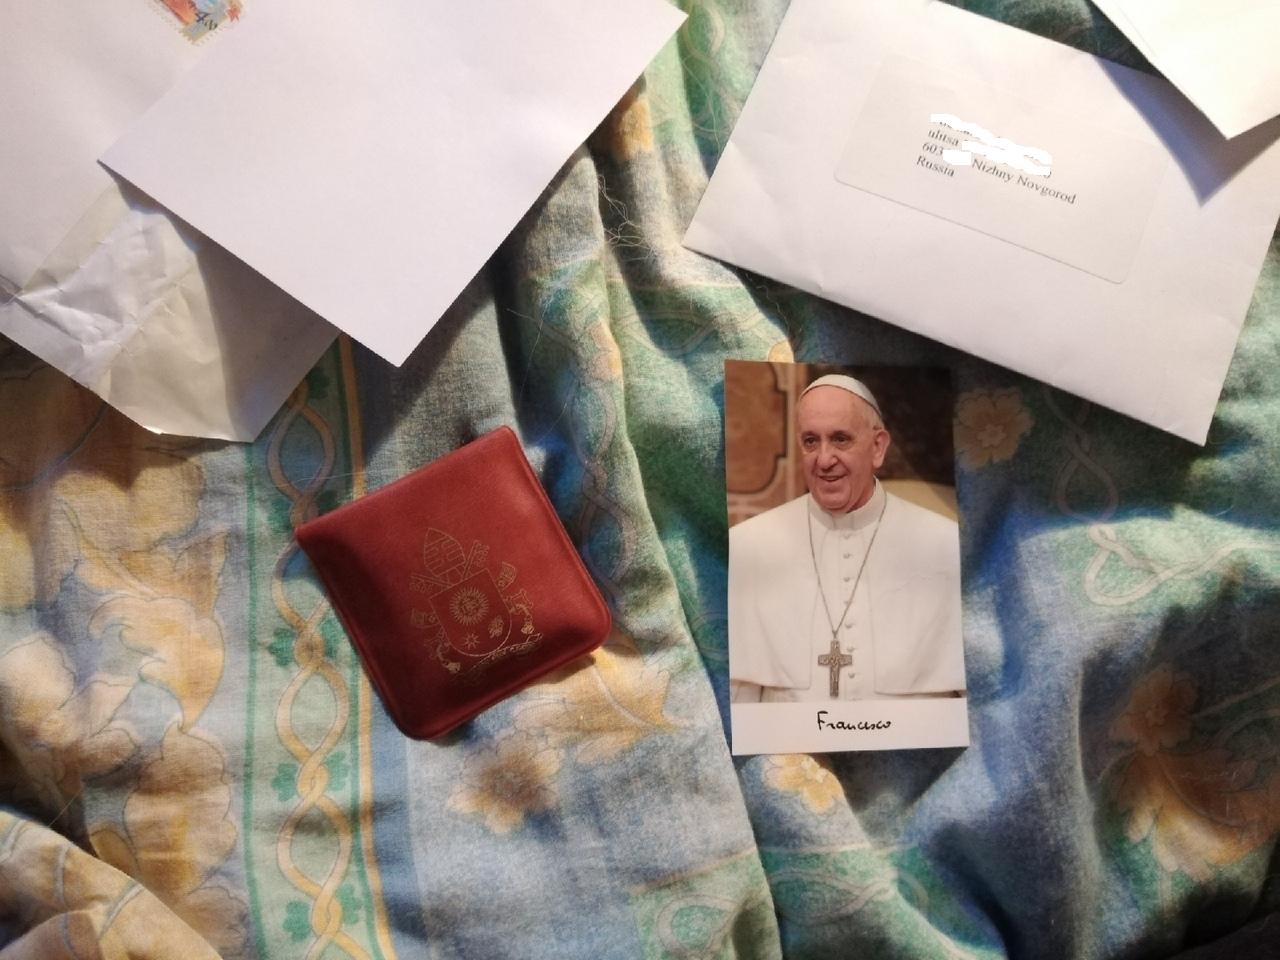 Нижегородский школьник получил письмо и подарок от Папы Римского (ФОТО)